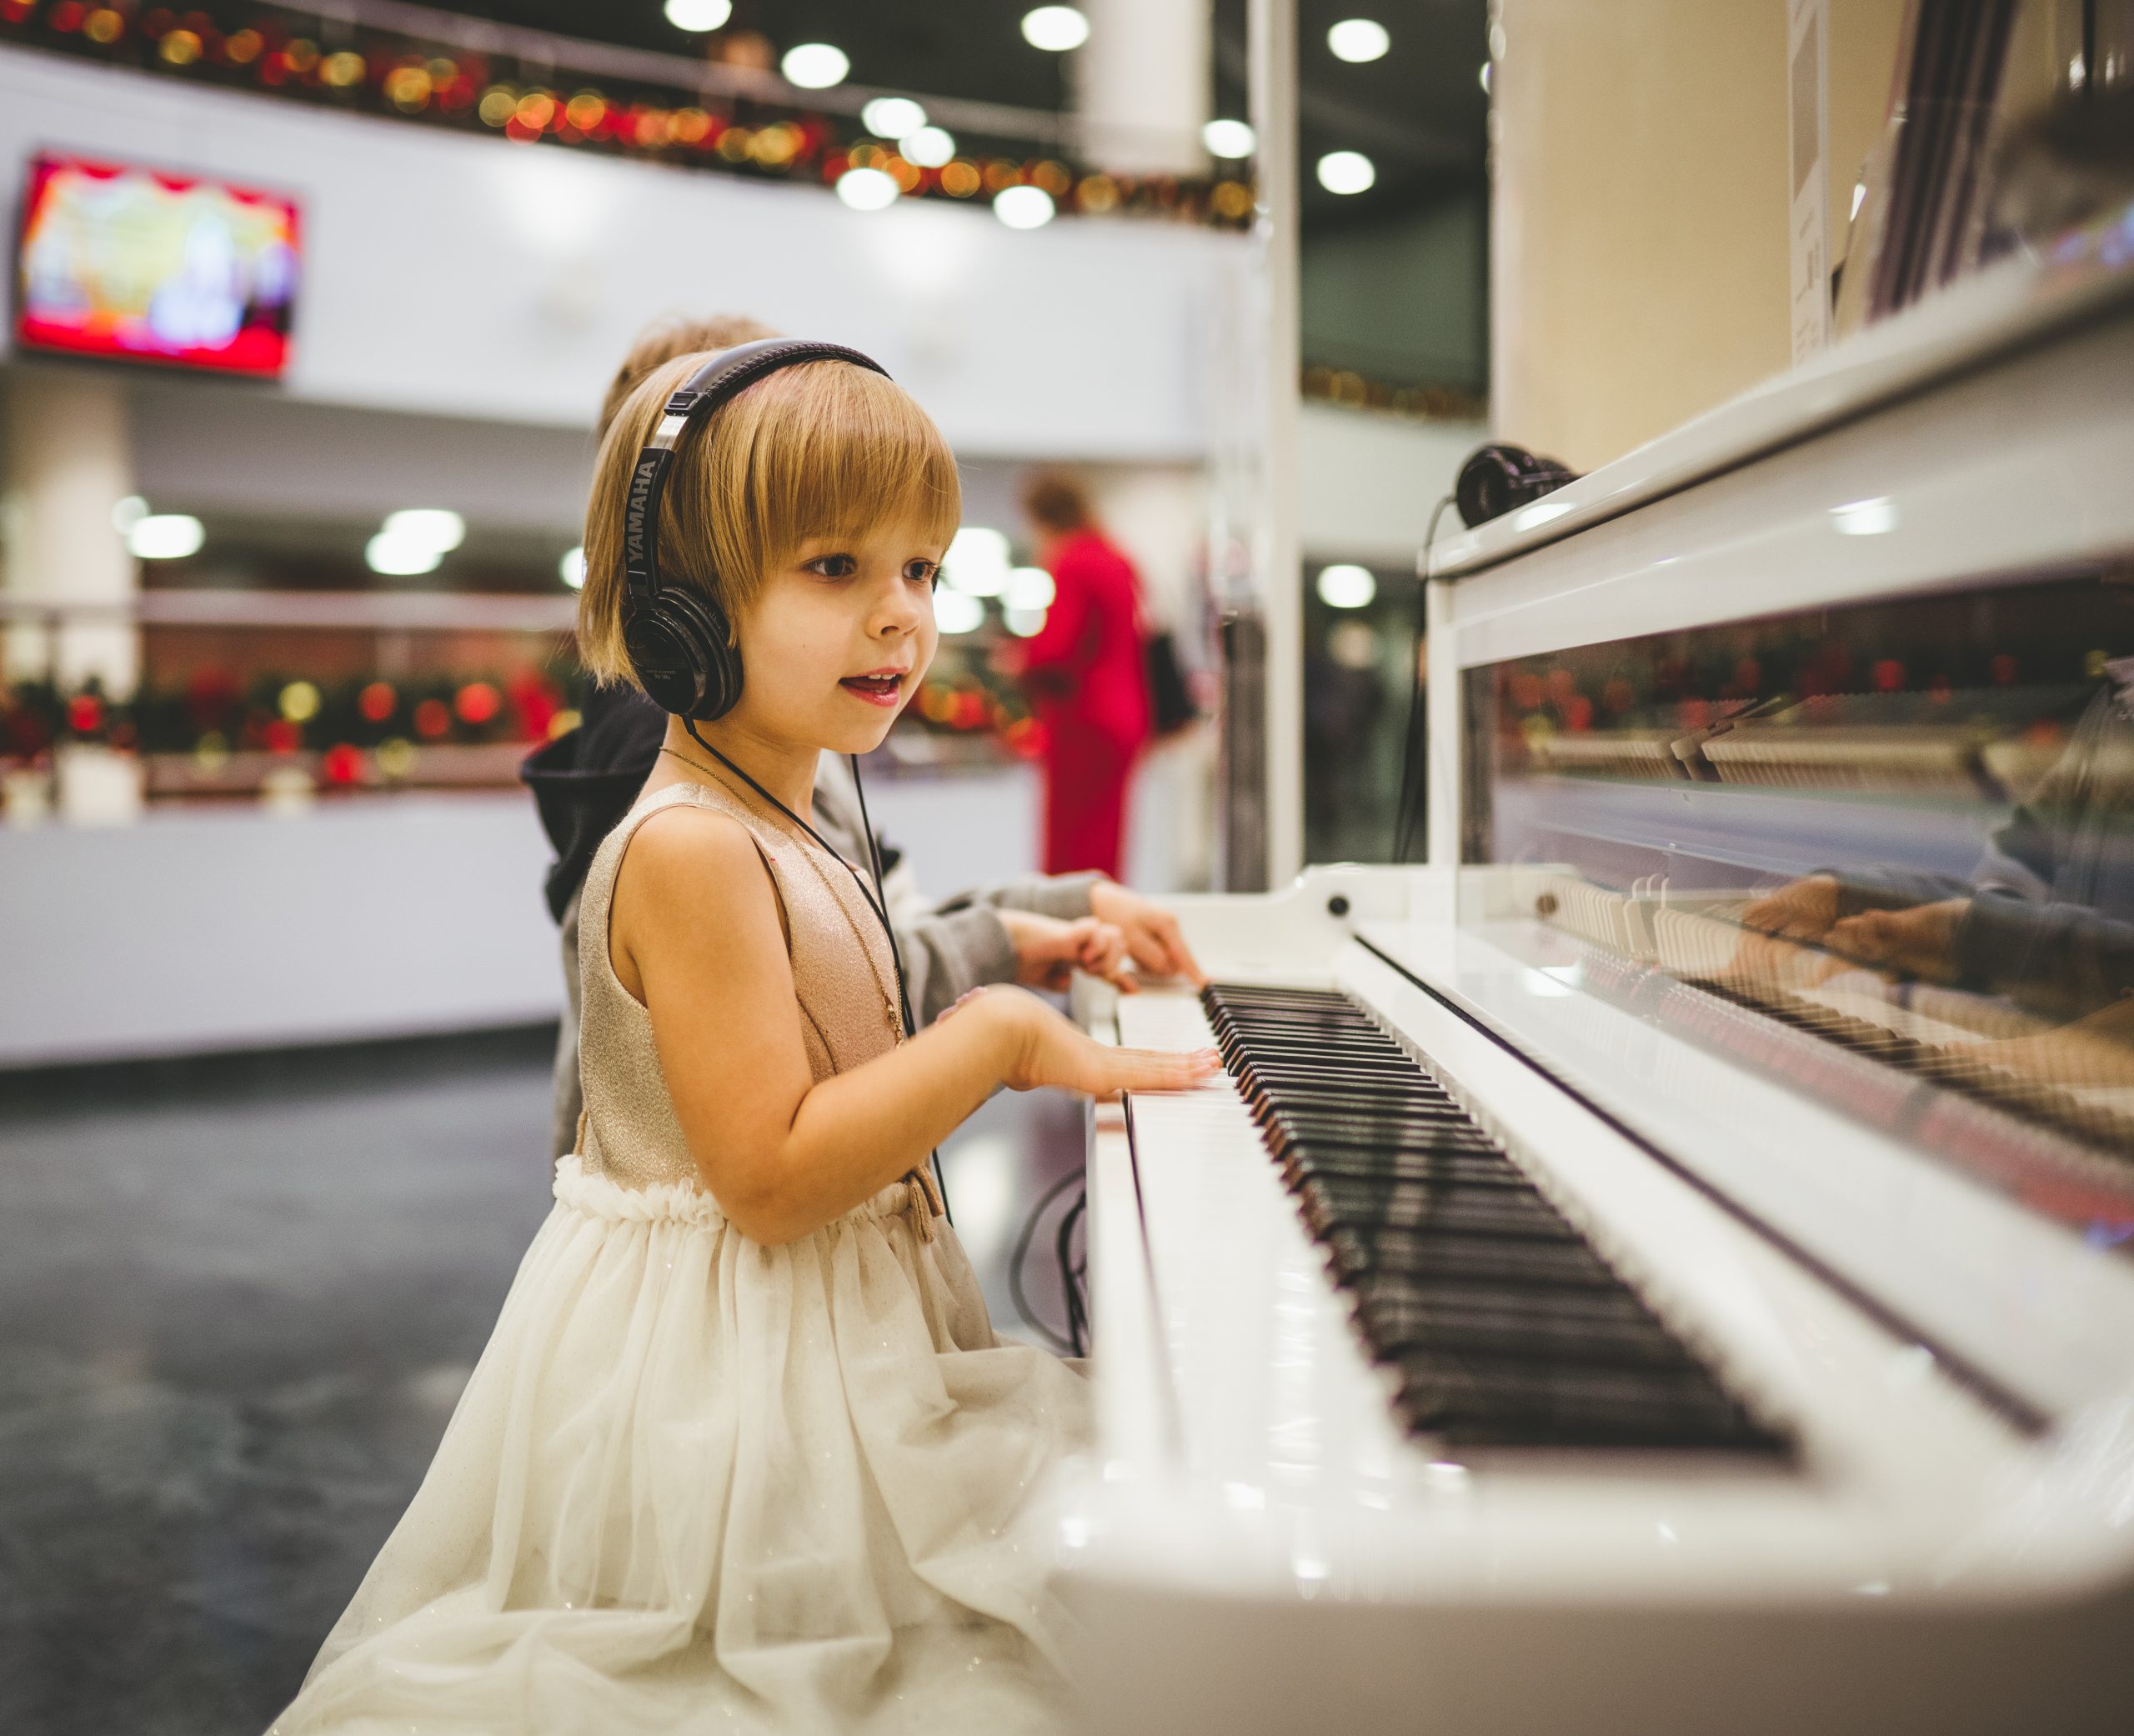 Jak wyglądają typowe zajęcia muzyczne dla dzieci?